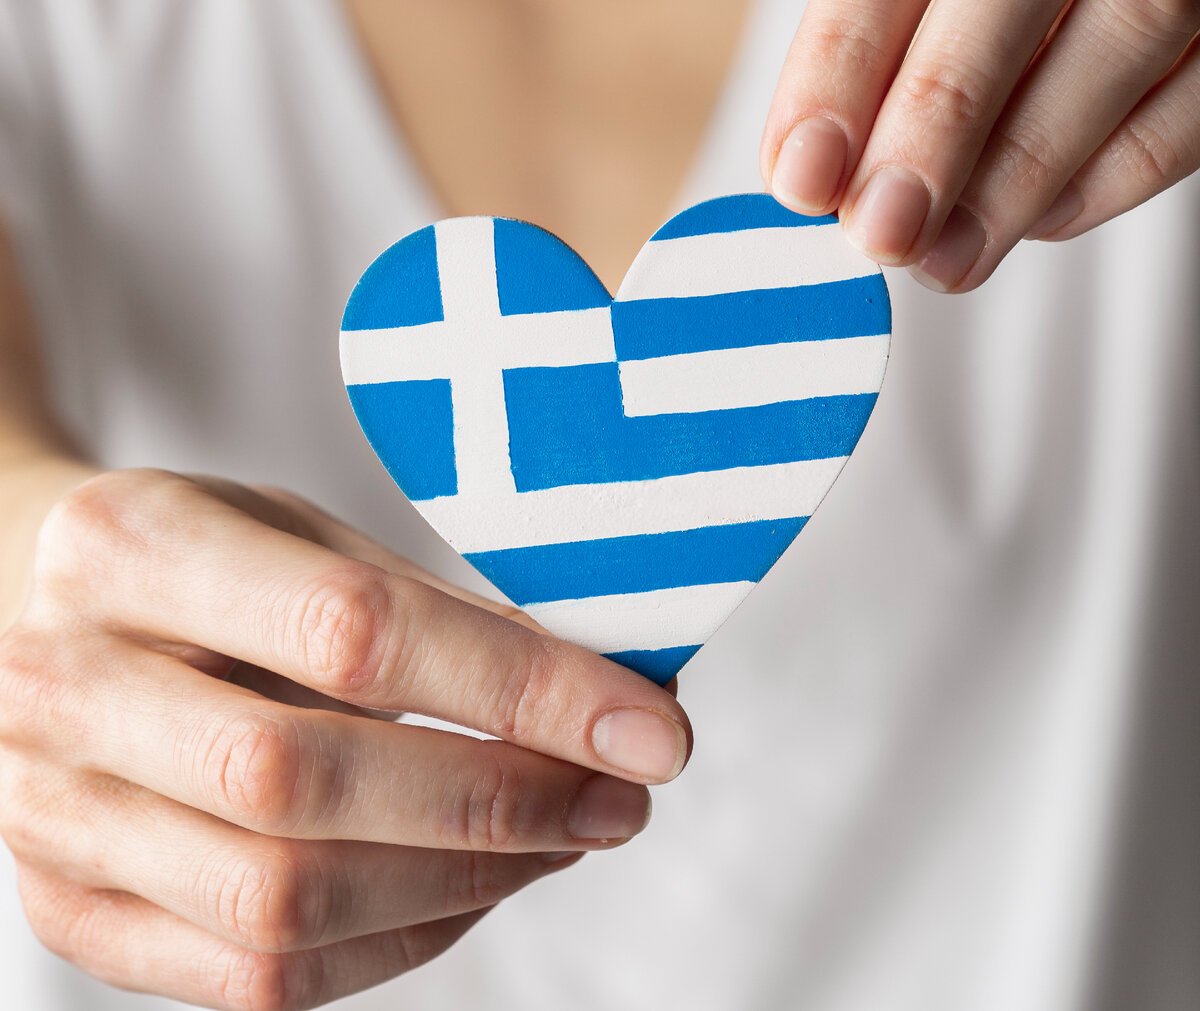 Греческий язык в смс и социальных сетях